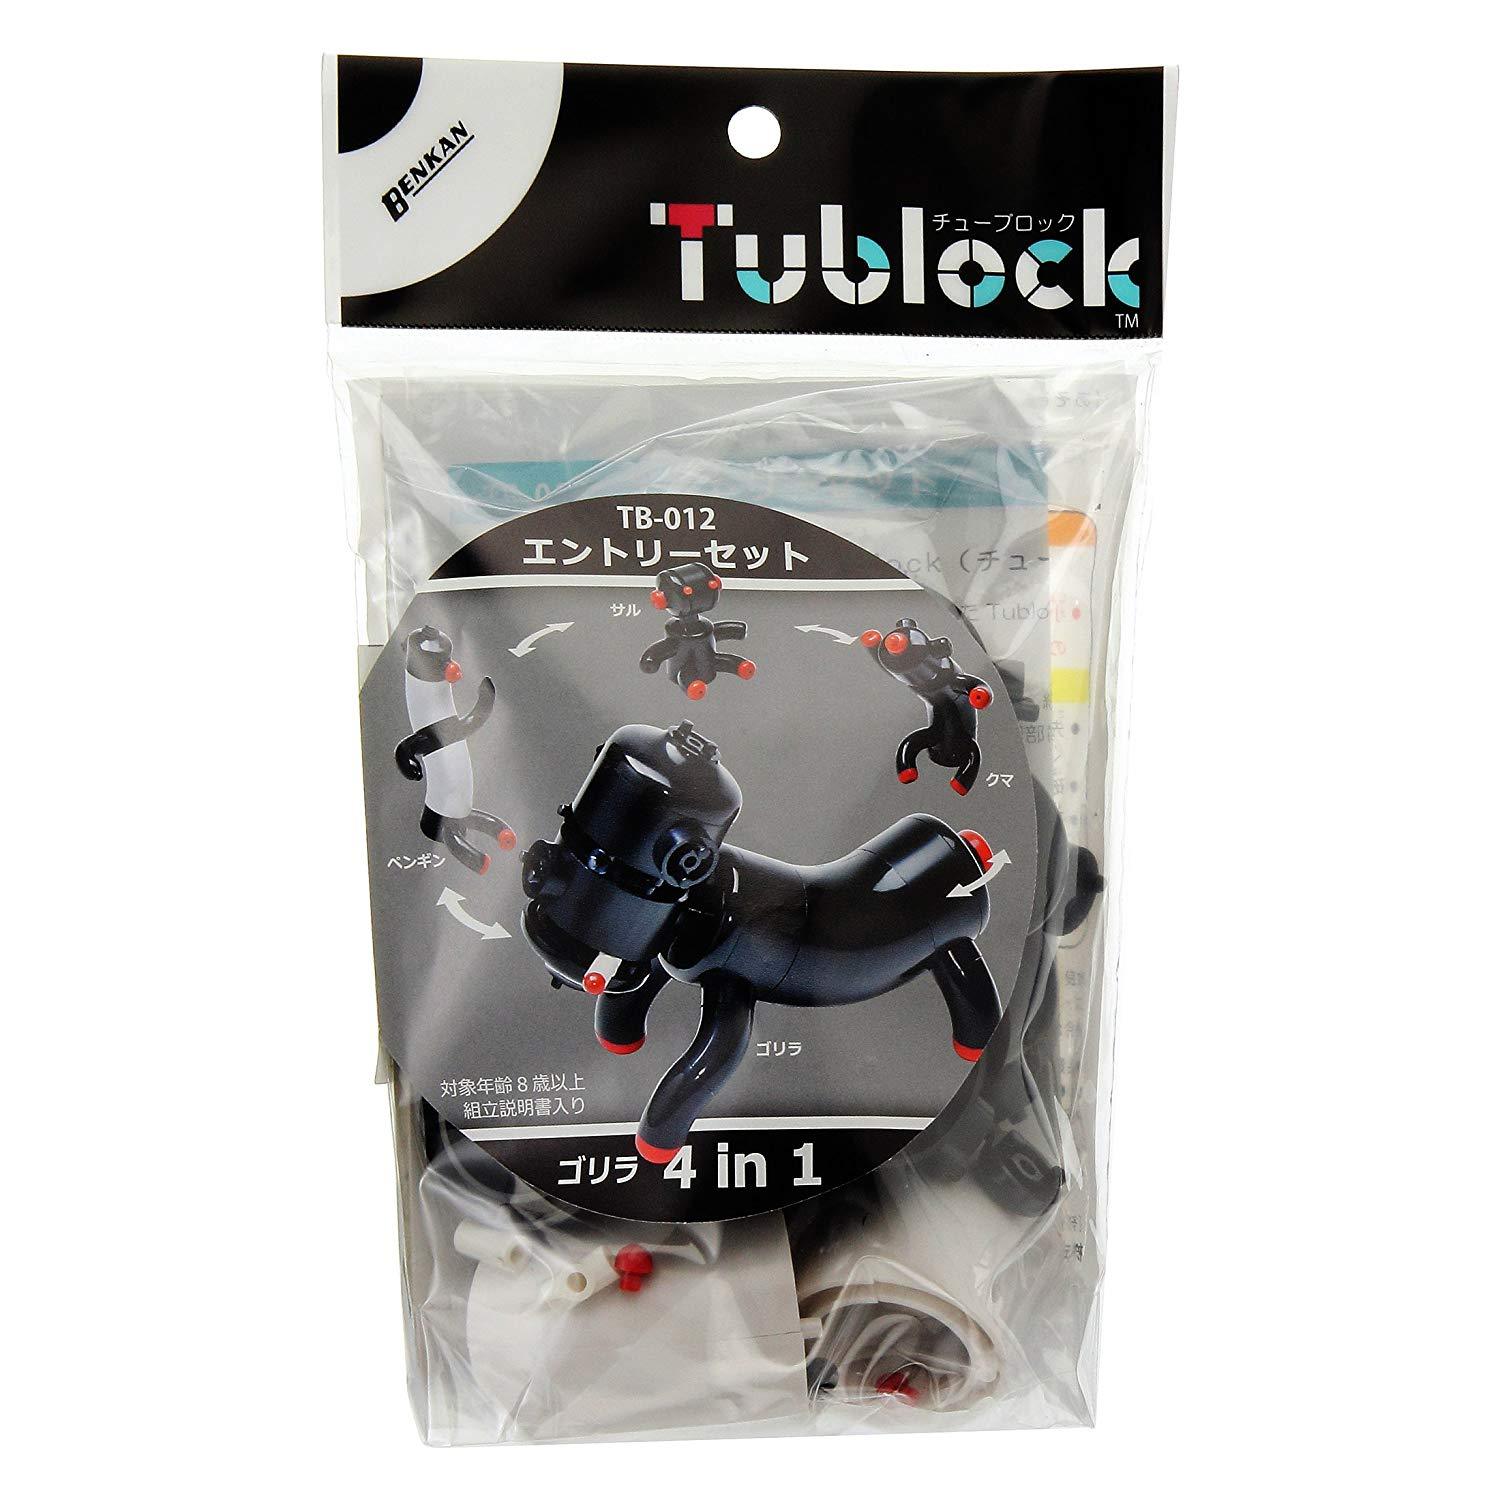 Tublock-Gorilla (4 in 1)